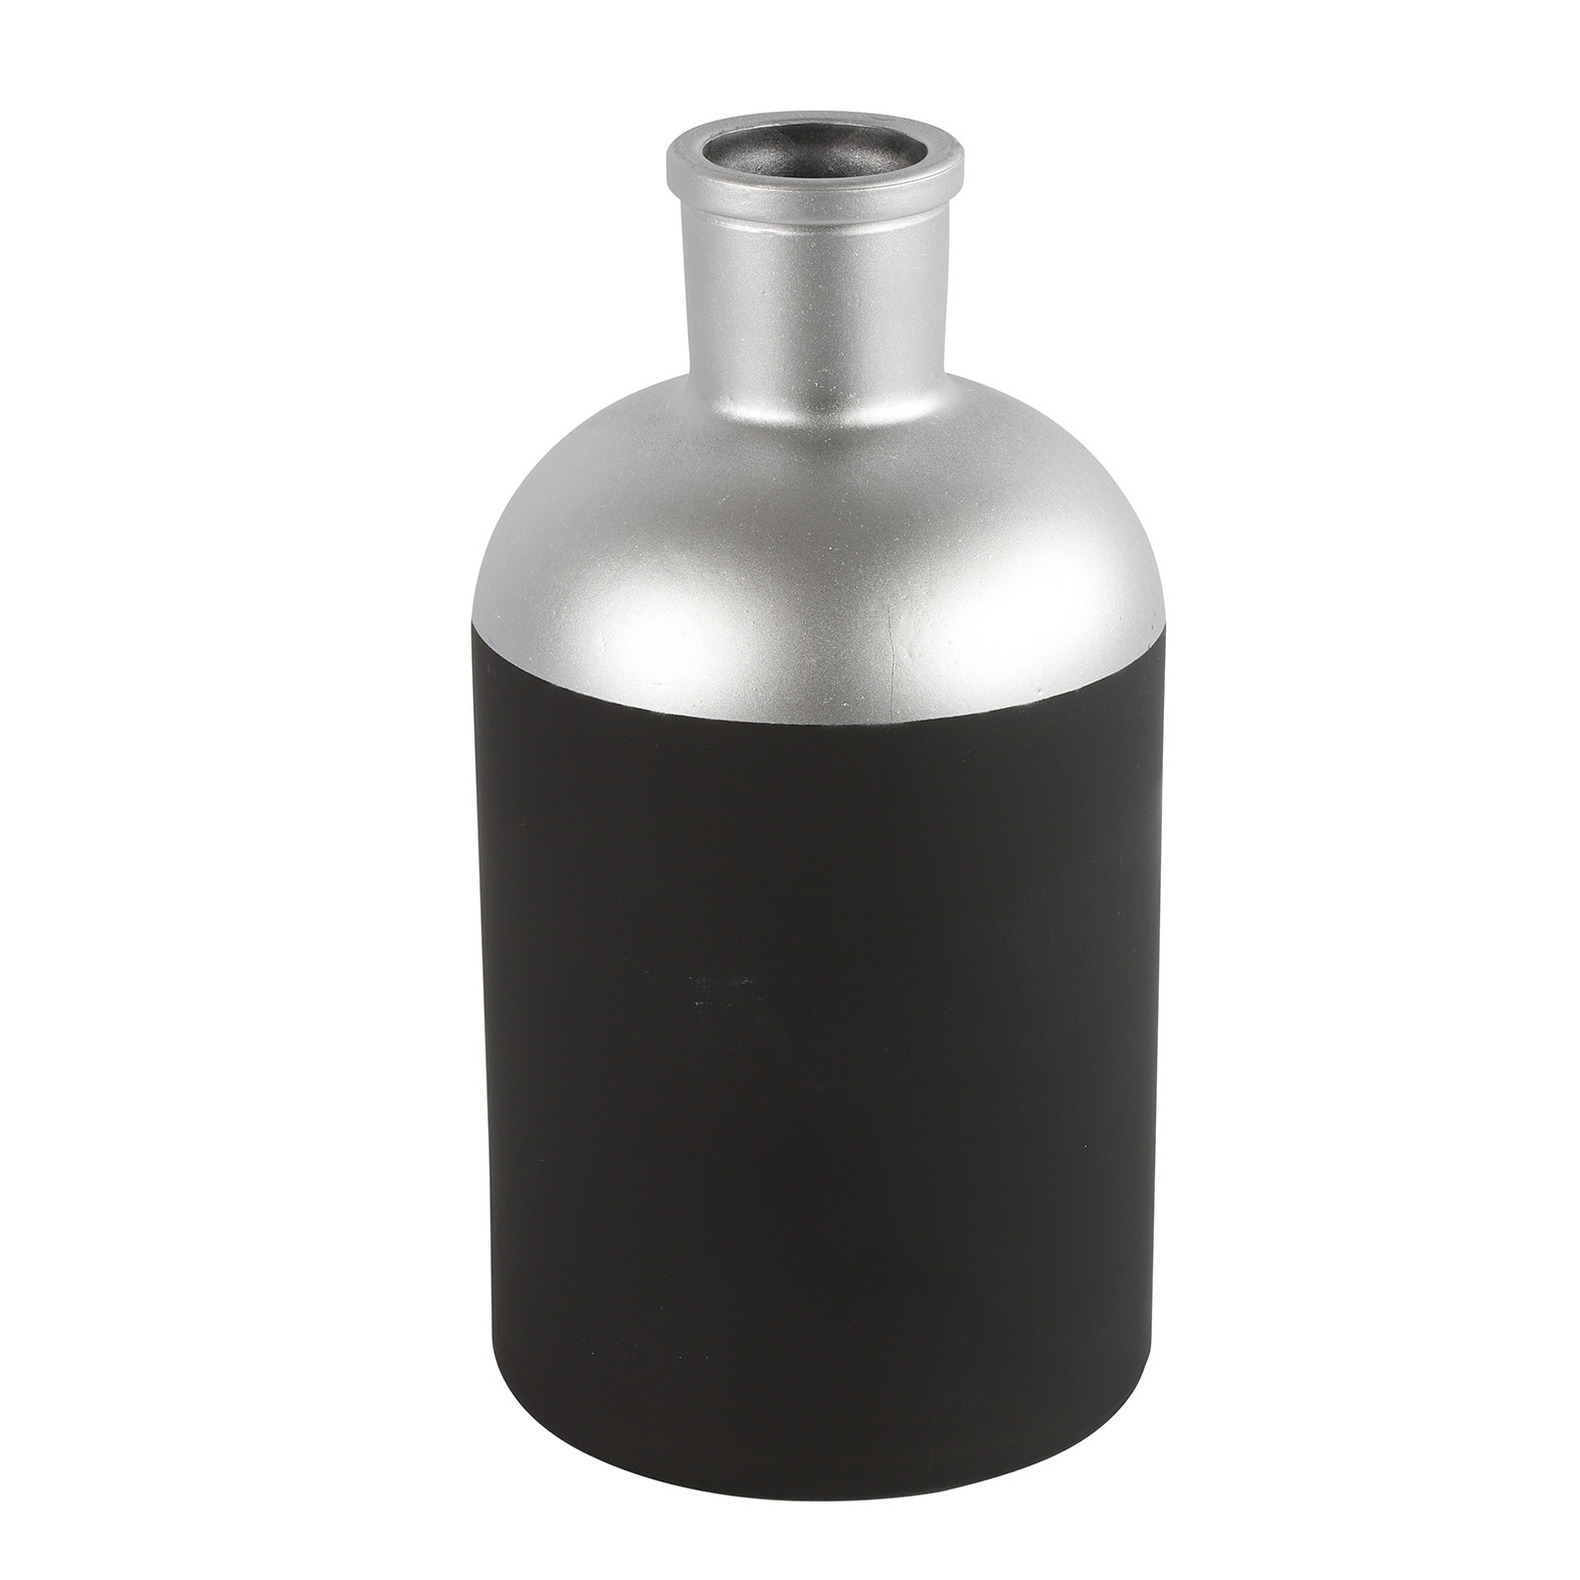 Countryfield Bloemen of deco vaas zwart-zilver glas luxe fles vorm D14 x H26 cm